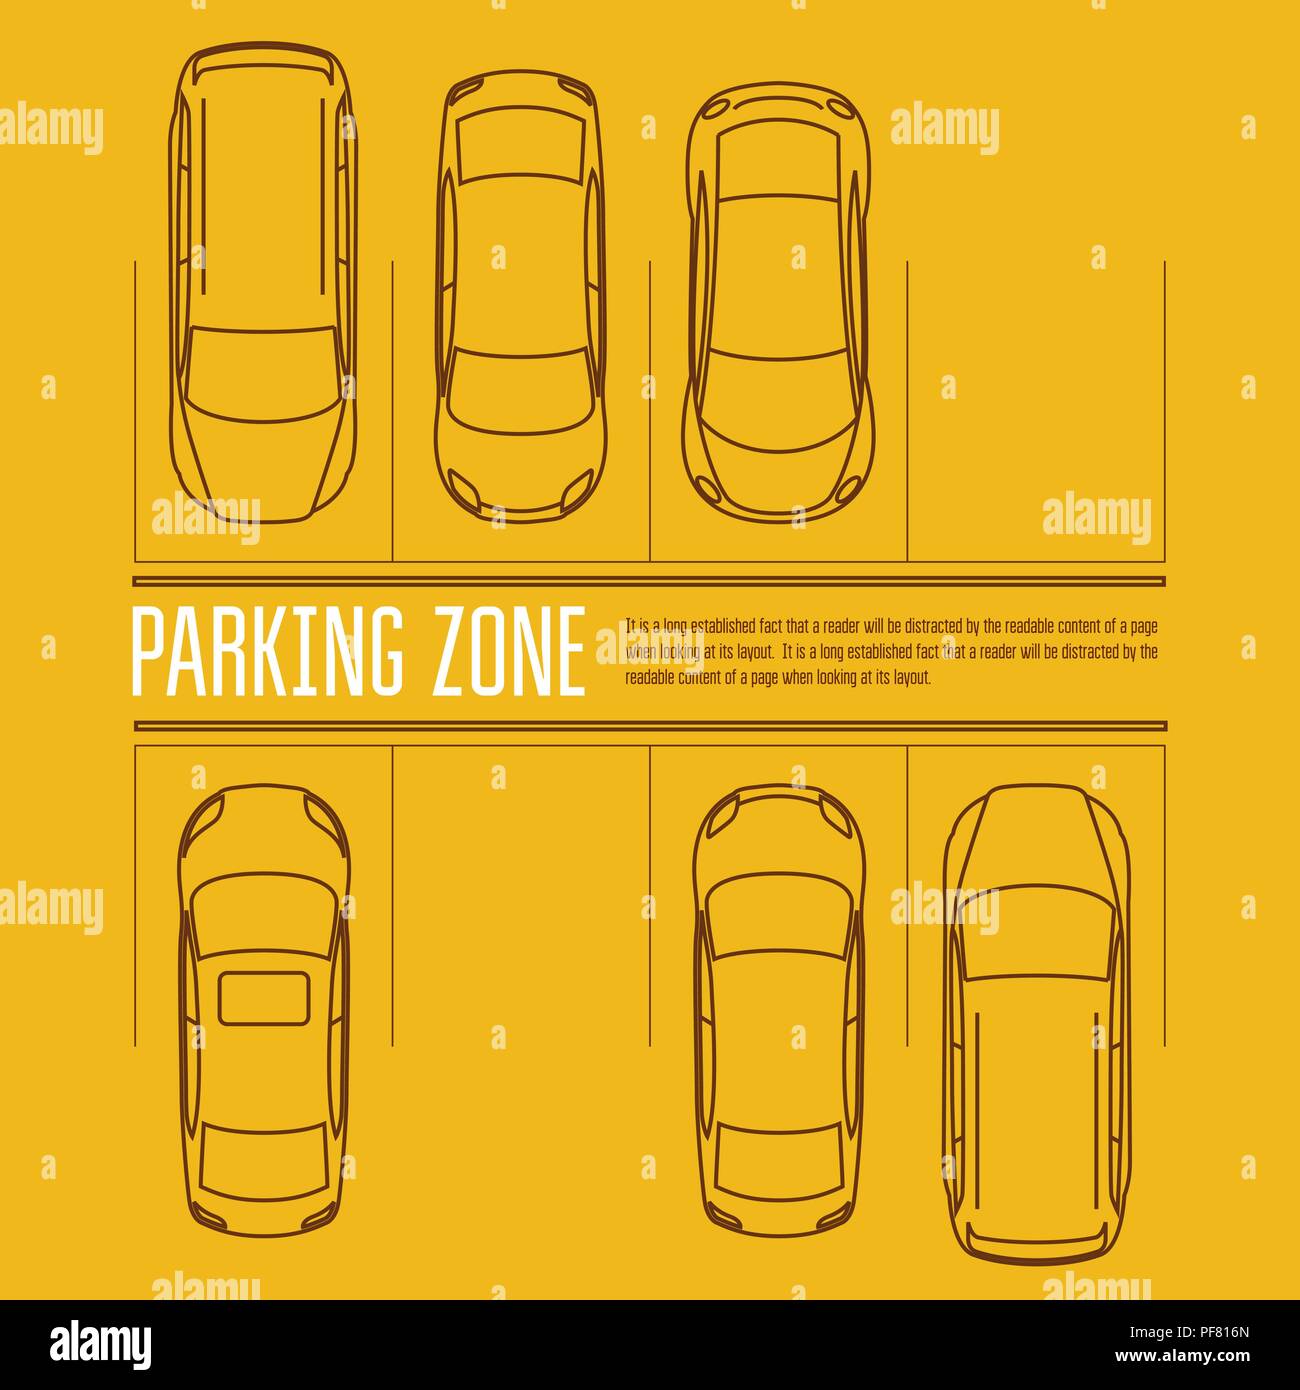 Parking voiture - Vue de dessus de la voiture dans la zone du parc Illustration de Vecteur